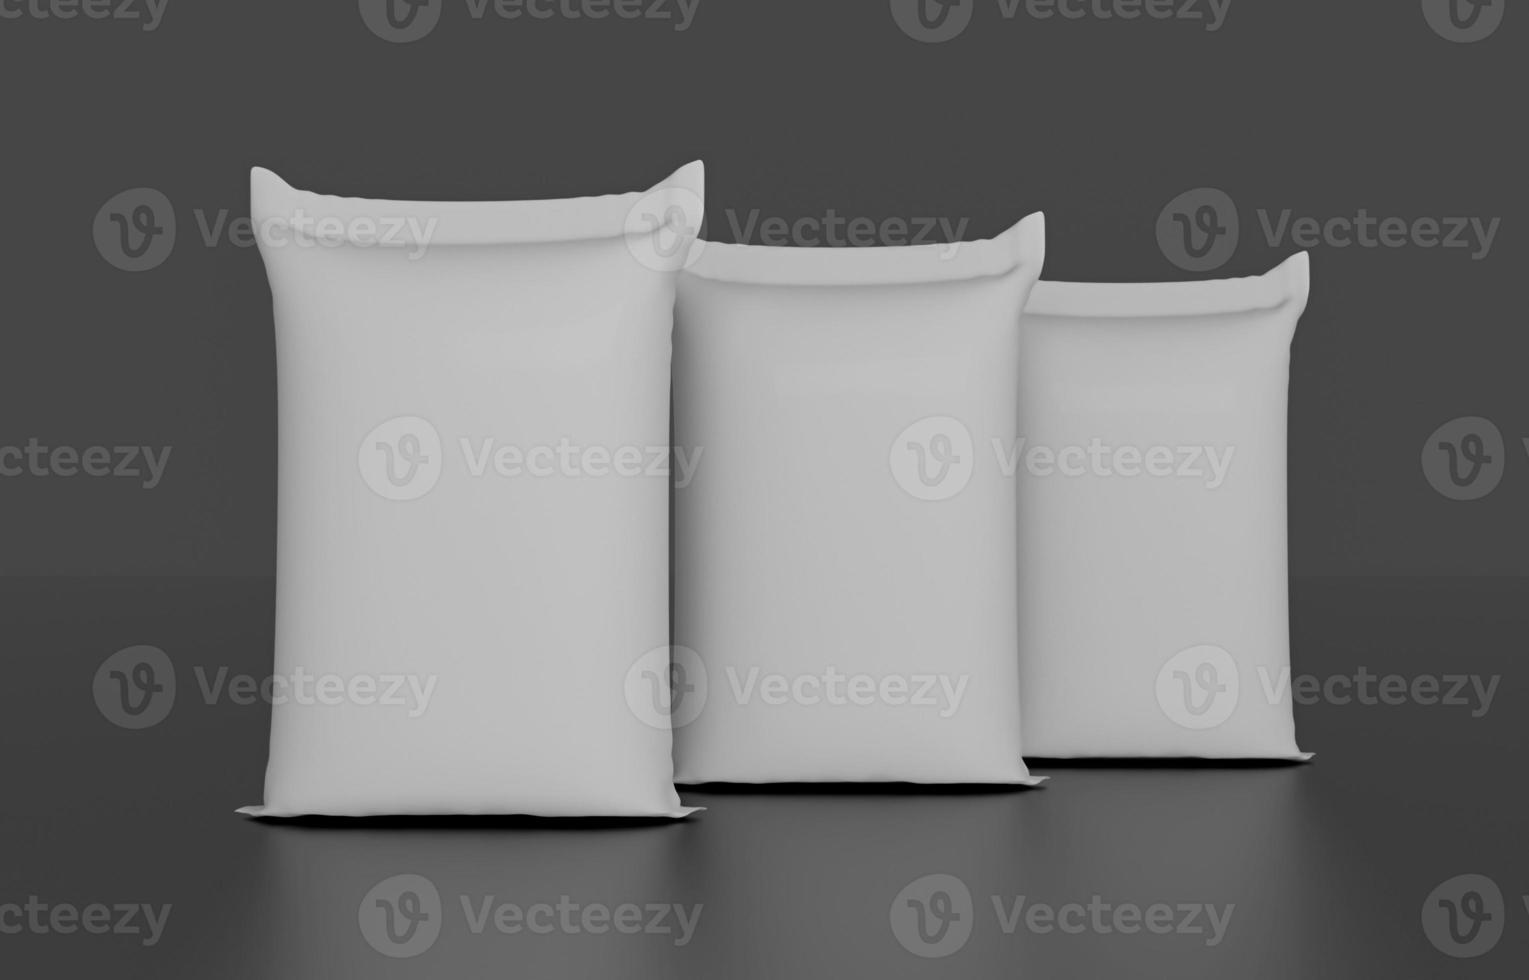 Sandsack oder weißer Plastiksack für Reis oder landwirtschaftliche Produkte isoliert auf weißem Hintergrund 3D-Darstellung foto